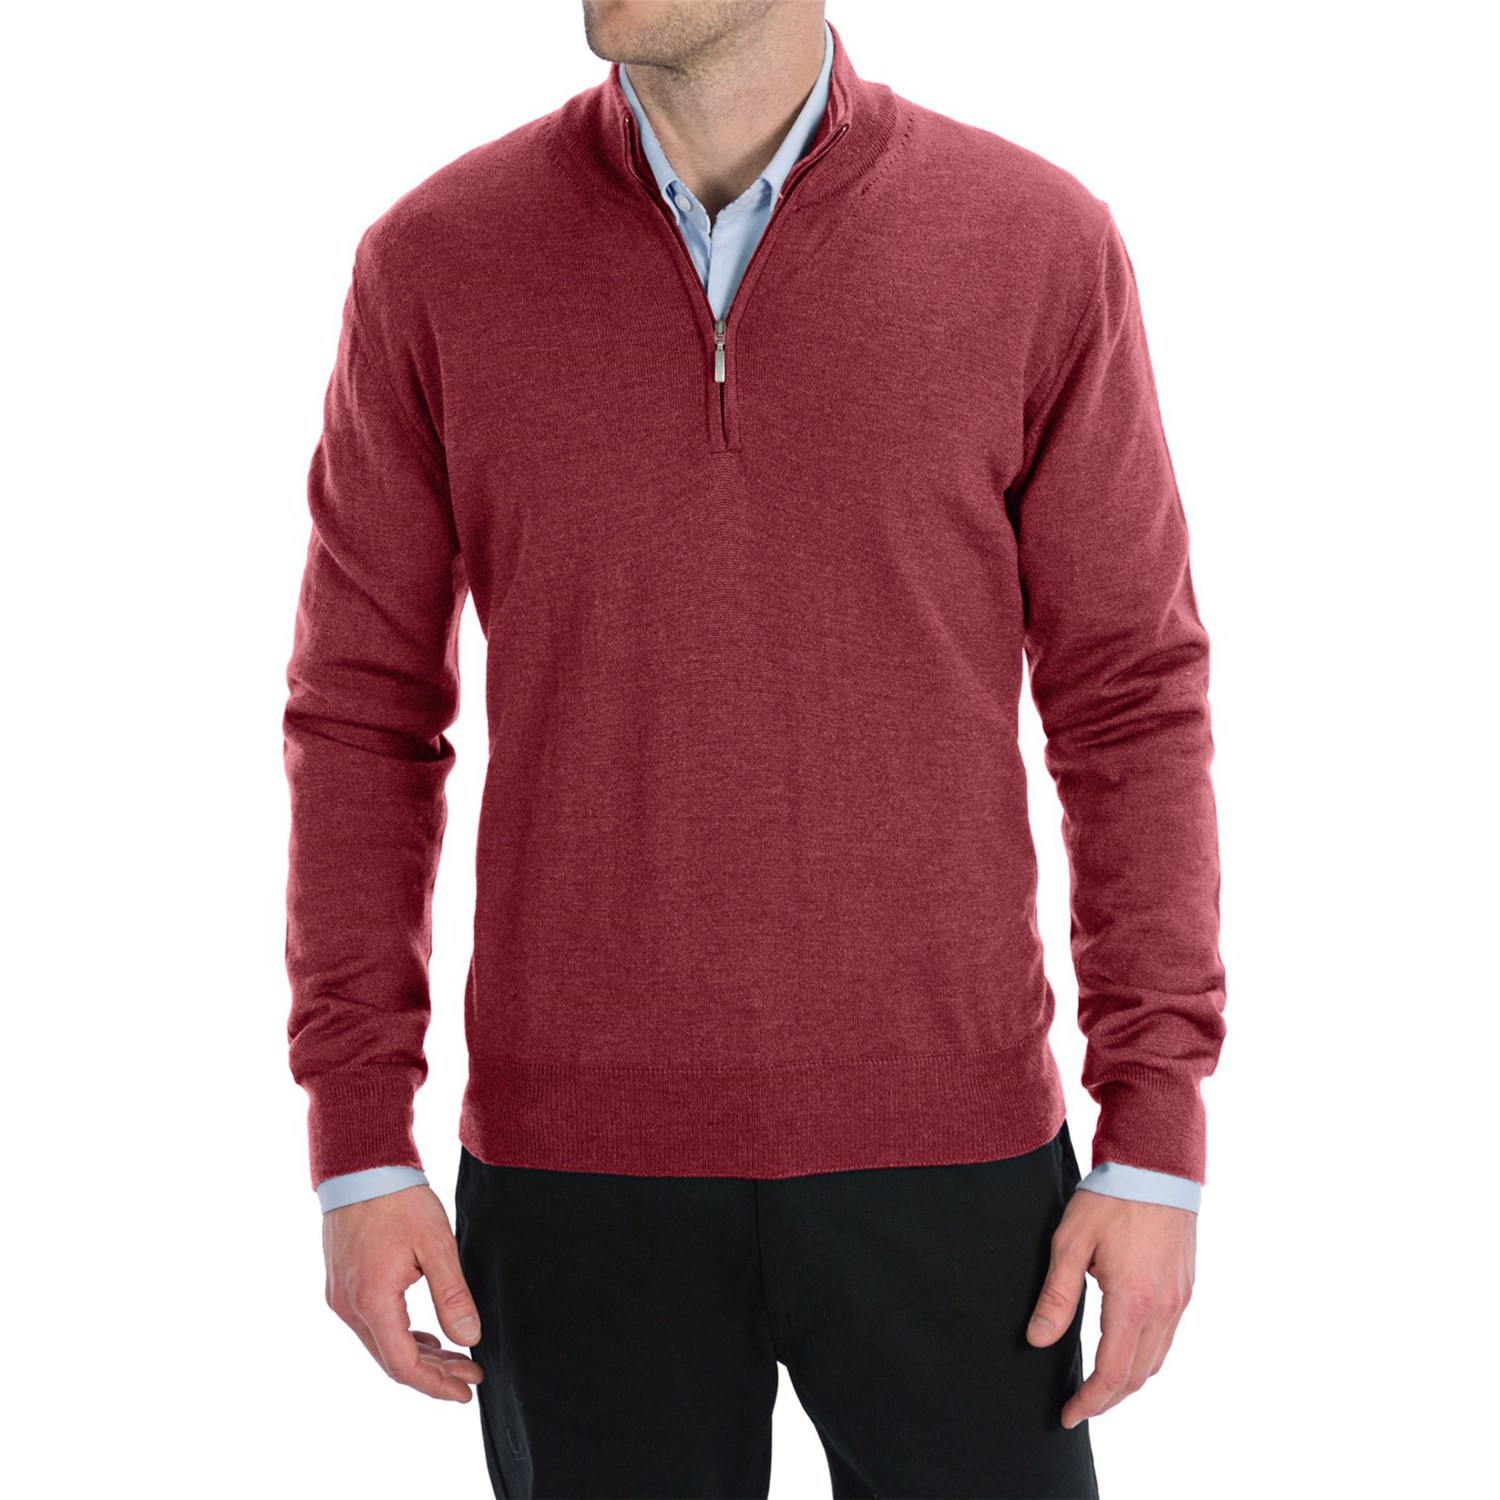 Toscano Zip Mock Neck Sweater - Merino Wool (For Men) - Save 44%